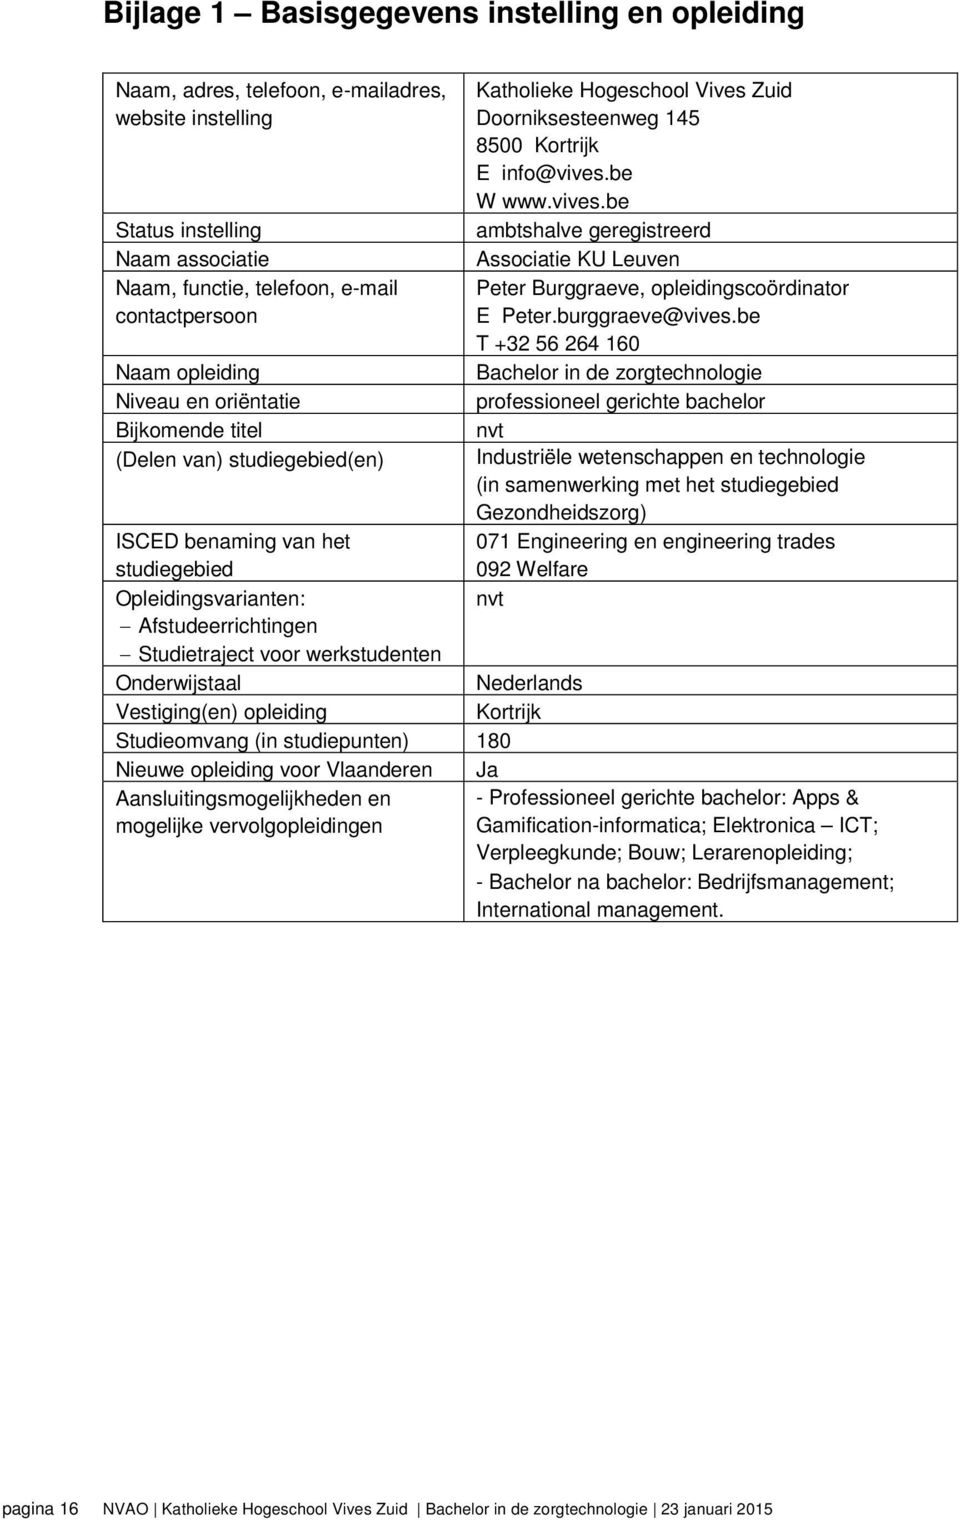 Nederlands Vestiging(en) opleiding Kortrijk Studieomvang (in studiepunten) 180 Nieuwe opleiding voor Vlaanderen Ja Aansluitingsmogelijkheden en mogelijke vervolgopleidingen Katholieke Hogeschool